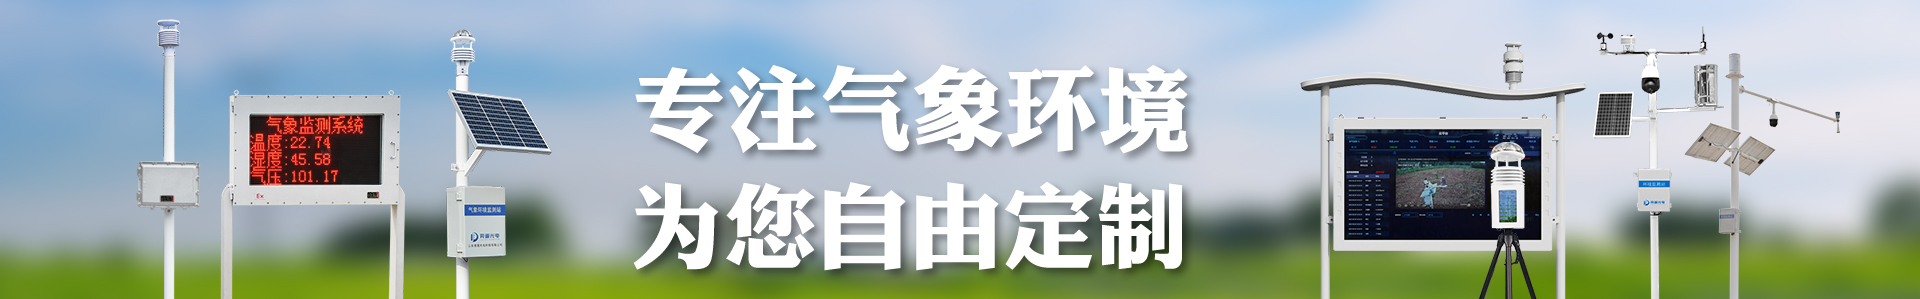 气象站设备厂家ob欧宝（中国）有限公司-自动气象站-小型气象站-防爆气象站-光伏气象站-ob欧宝（中国）有限公司